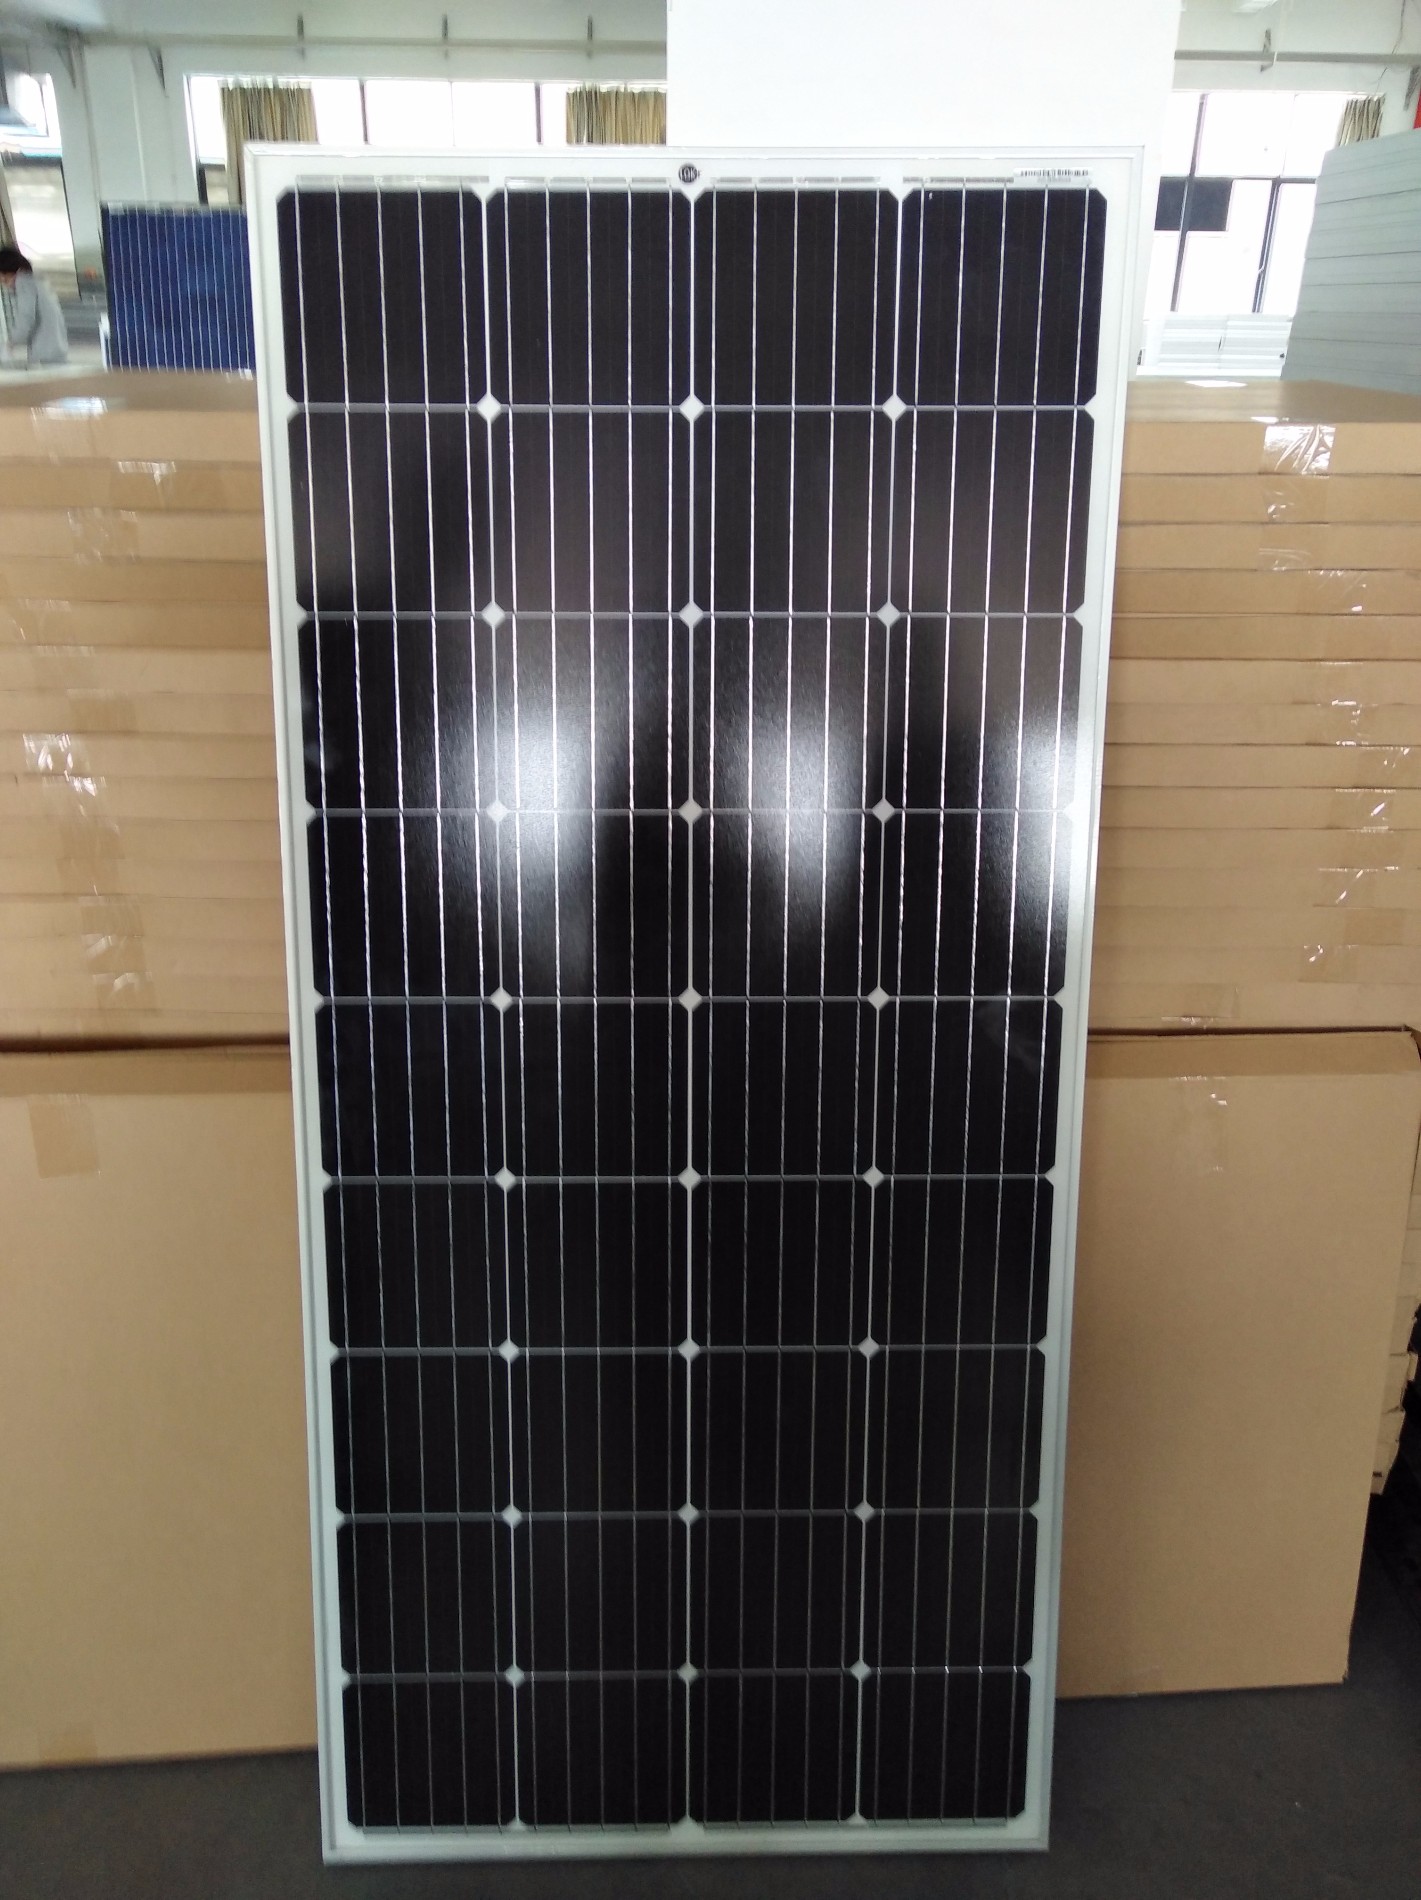 Vente Panneau Solaire Photovoltaïque Unique 150W, Achat cellules et panneaux solaires Marques